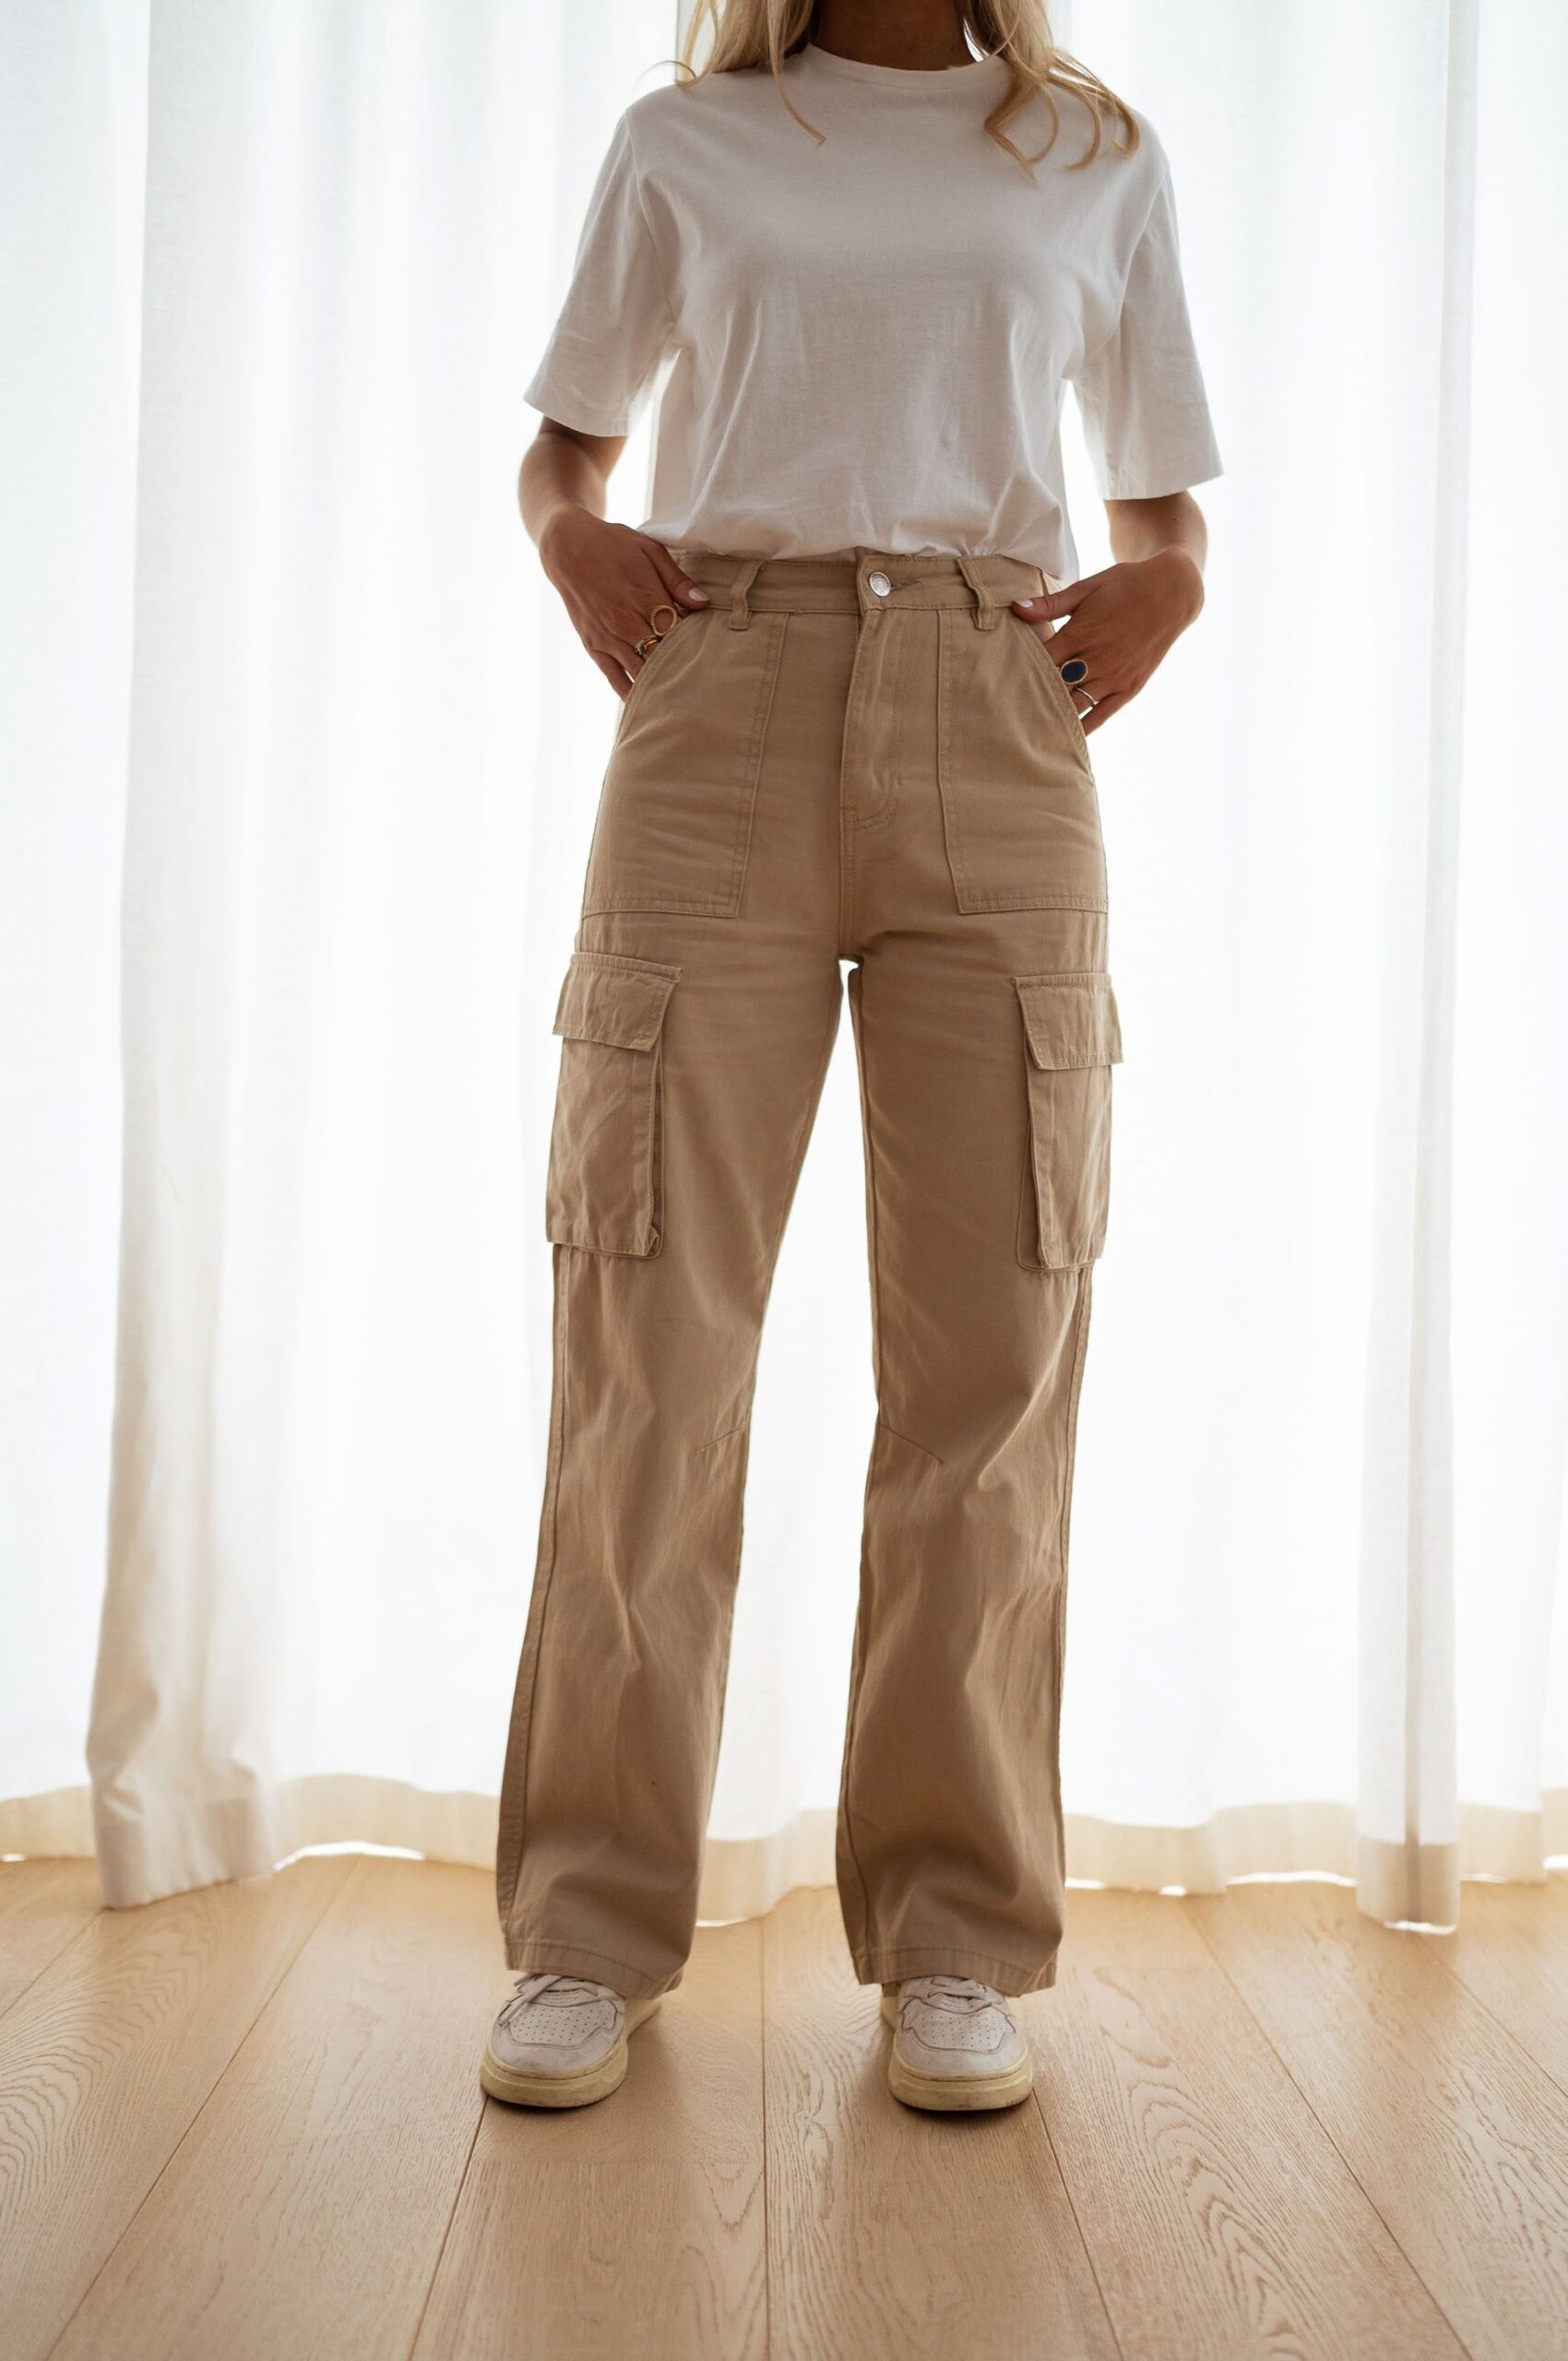 Khaki pants- Importance of khaki dress